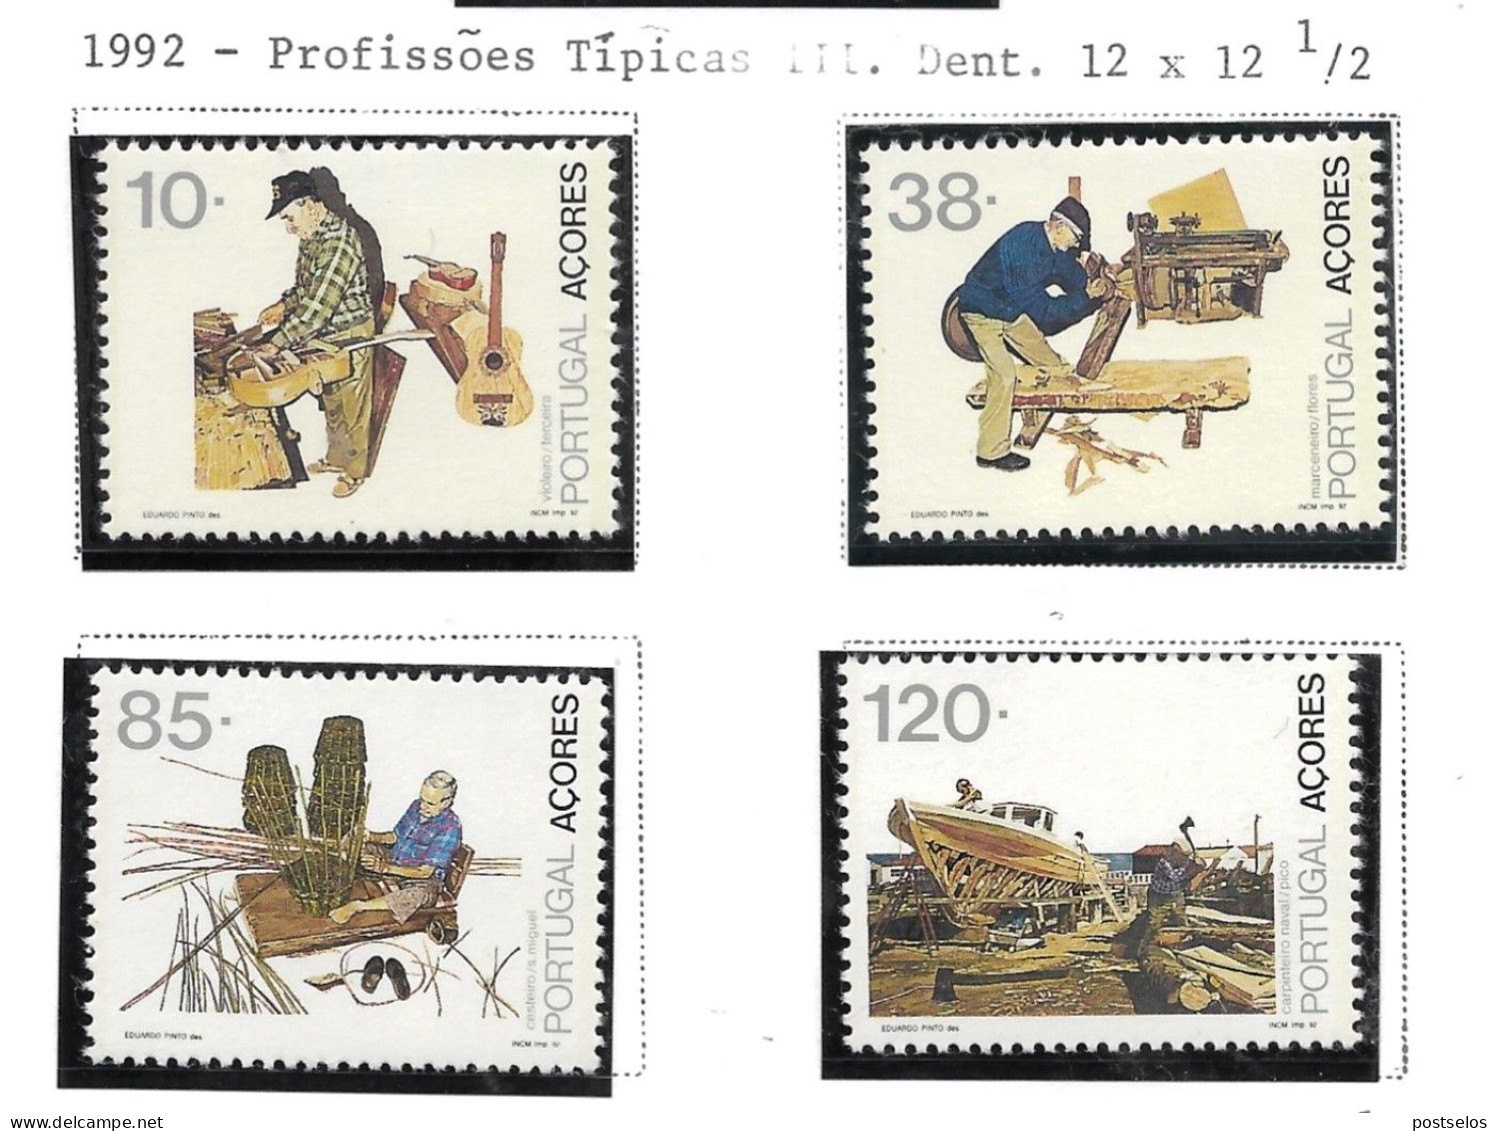 Profissões Açores - Unused Stamps